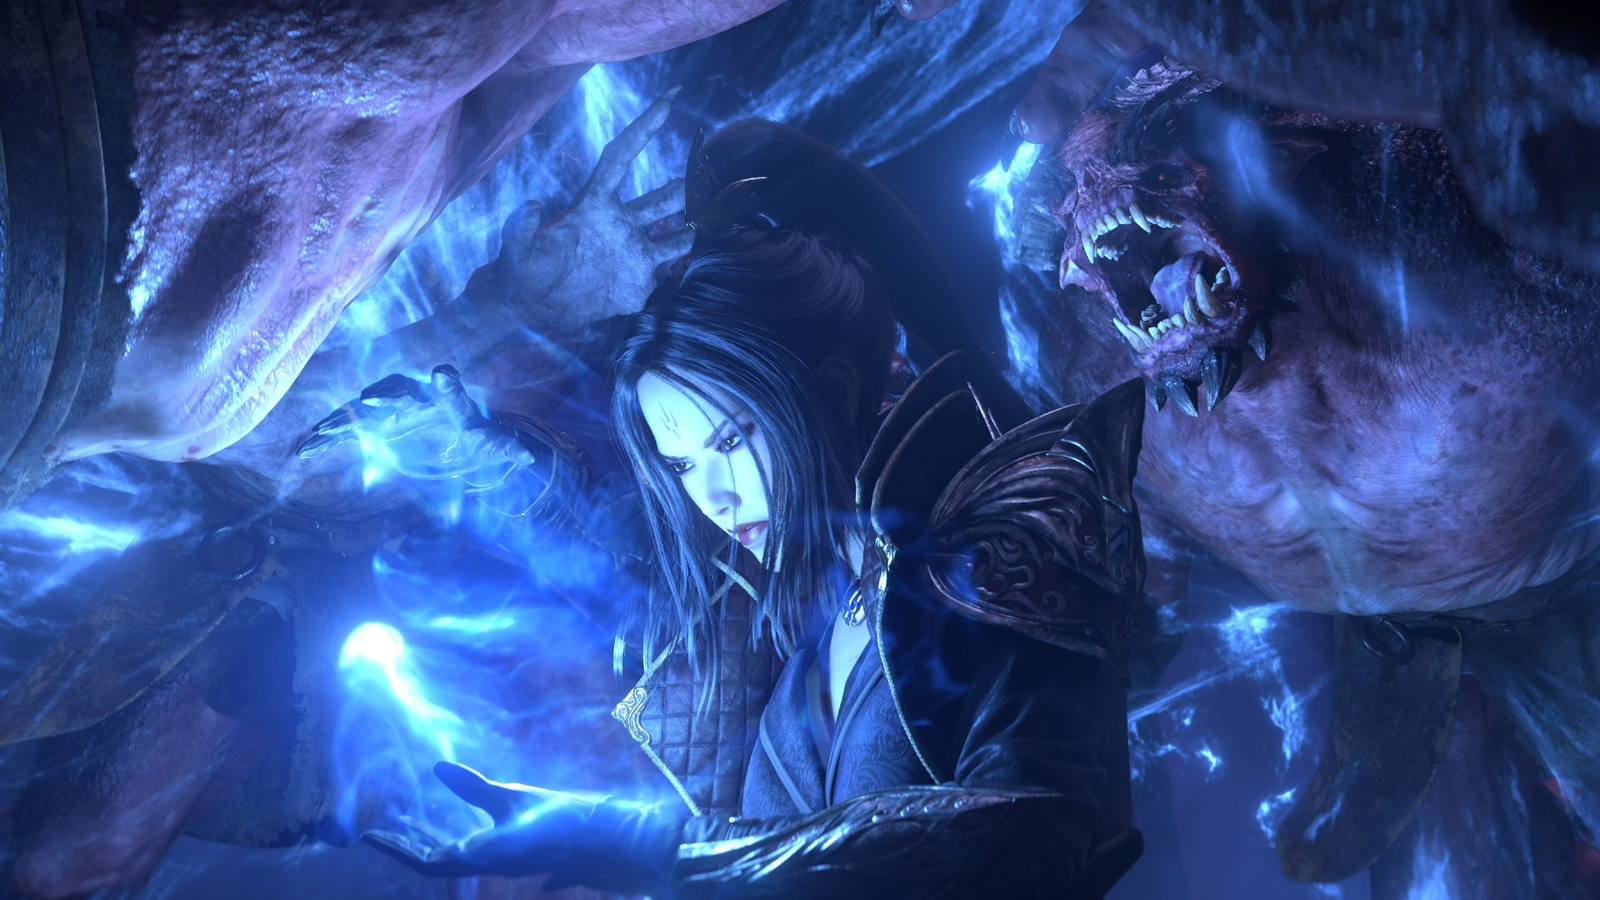 Wizard PVE Build for Season 14 in Diablo Immortal